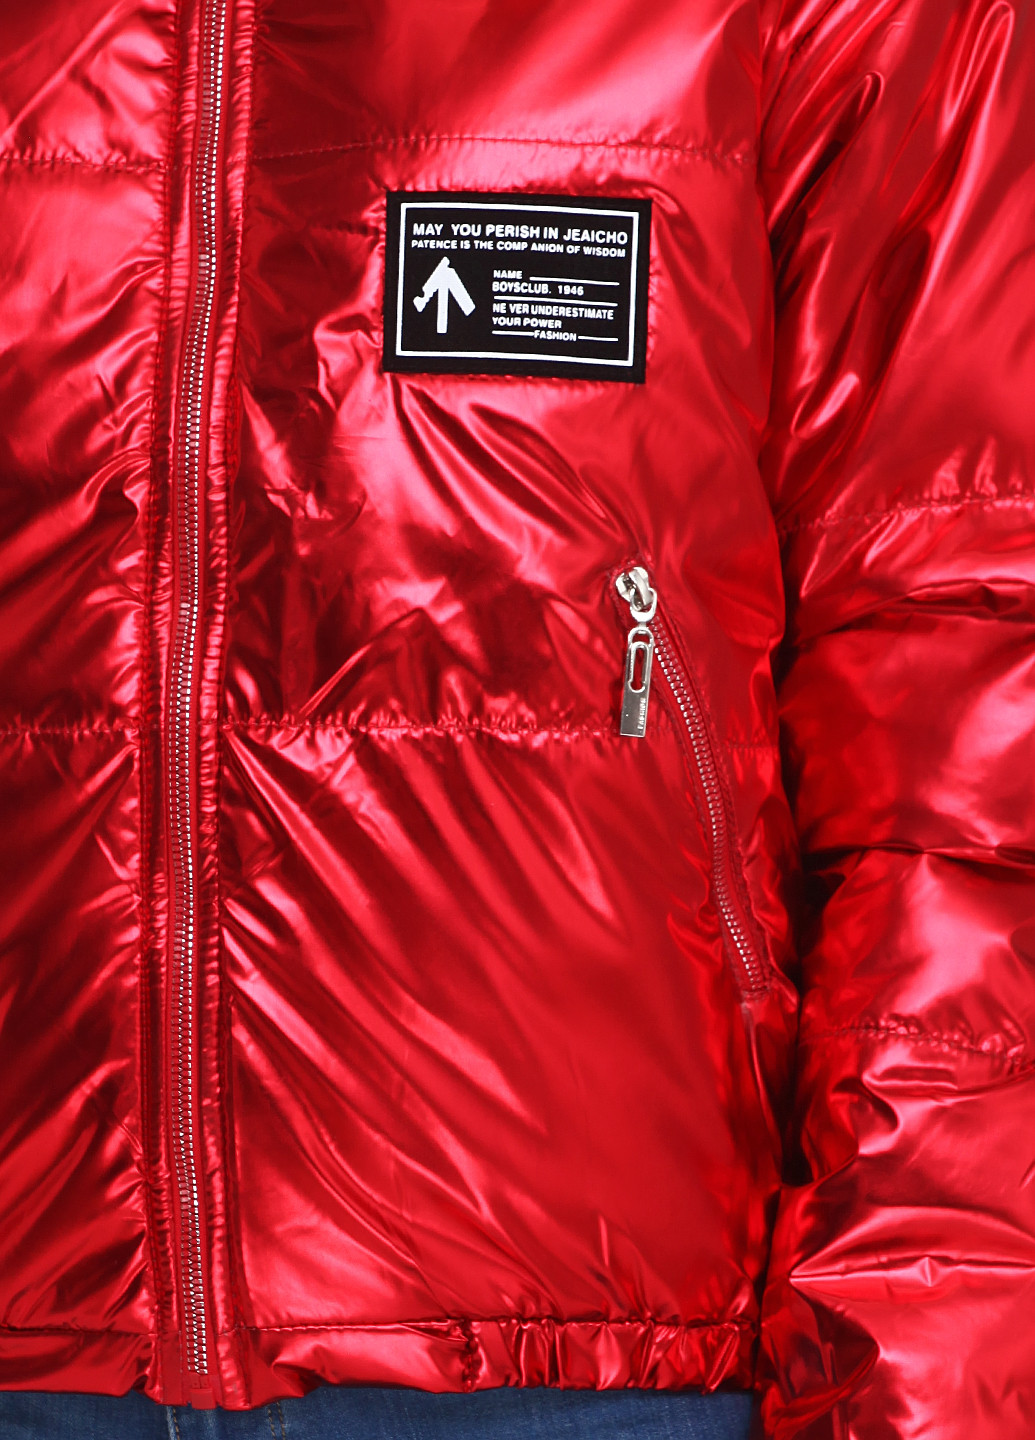 Красная демисезонная куртка Catherine